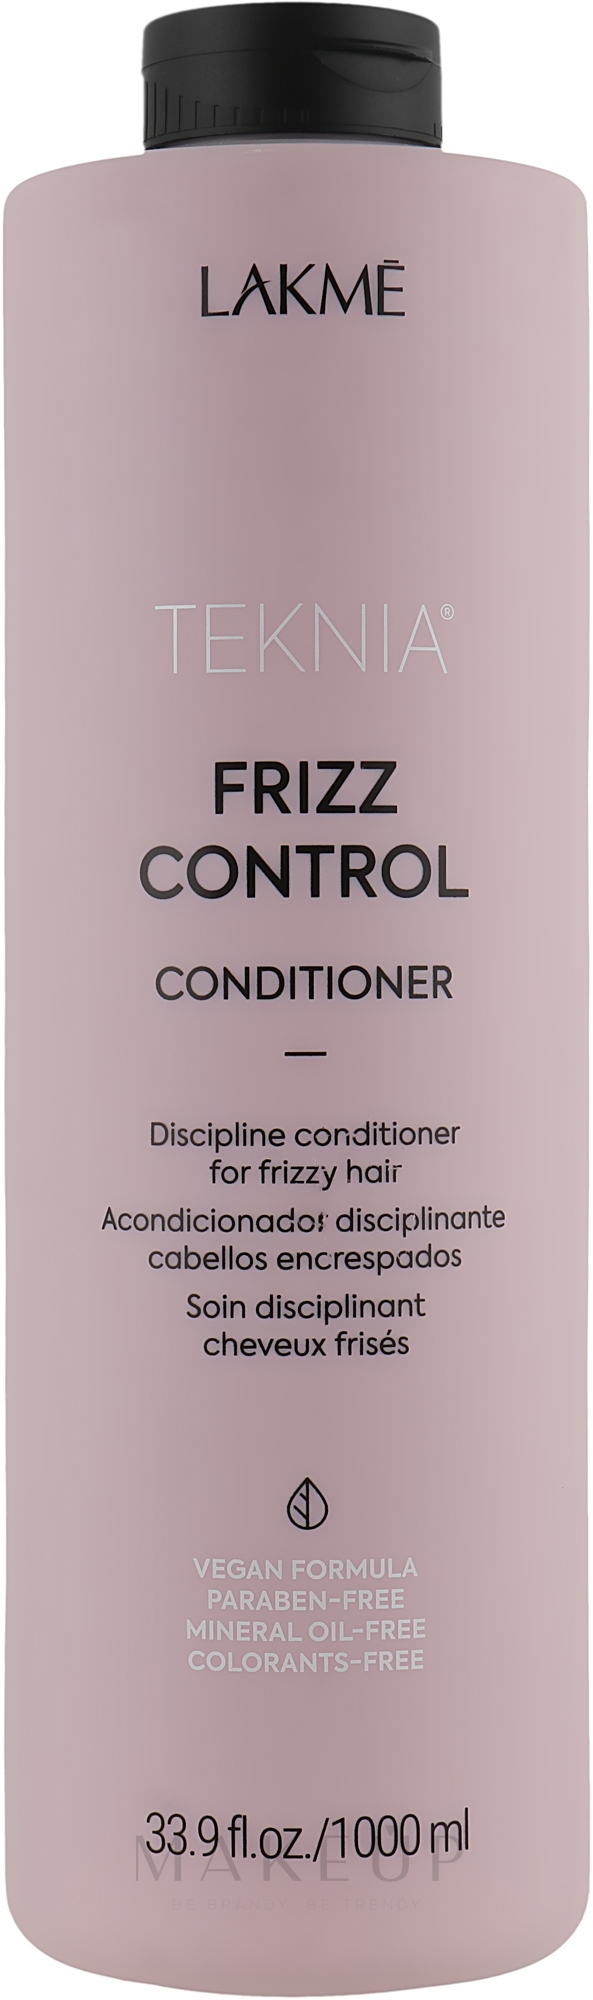 Bändigender Conditioner für widerspenstiges oder krauses Haar - Lakme Teknia Frizz Control Conditioner — Bild 1000 ml